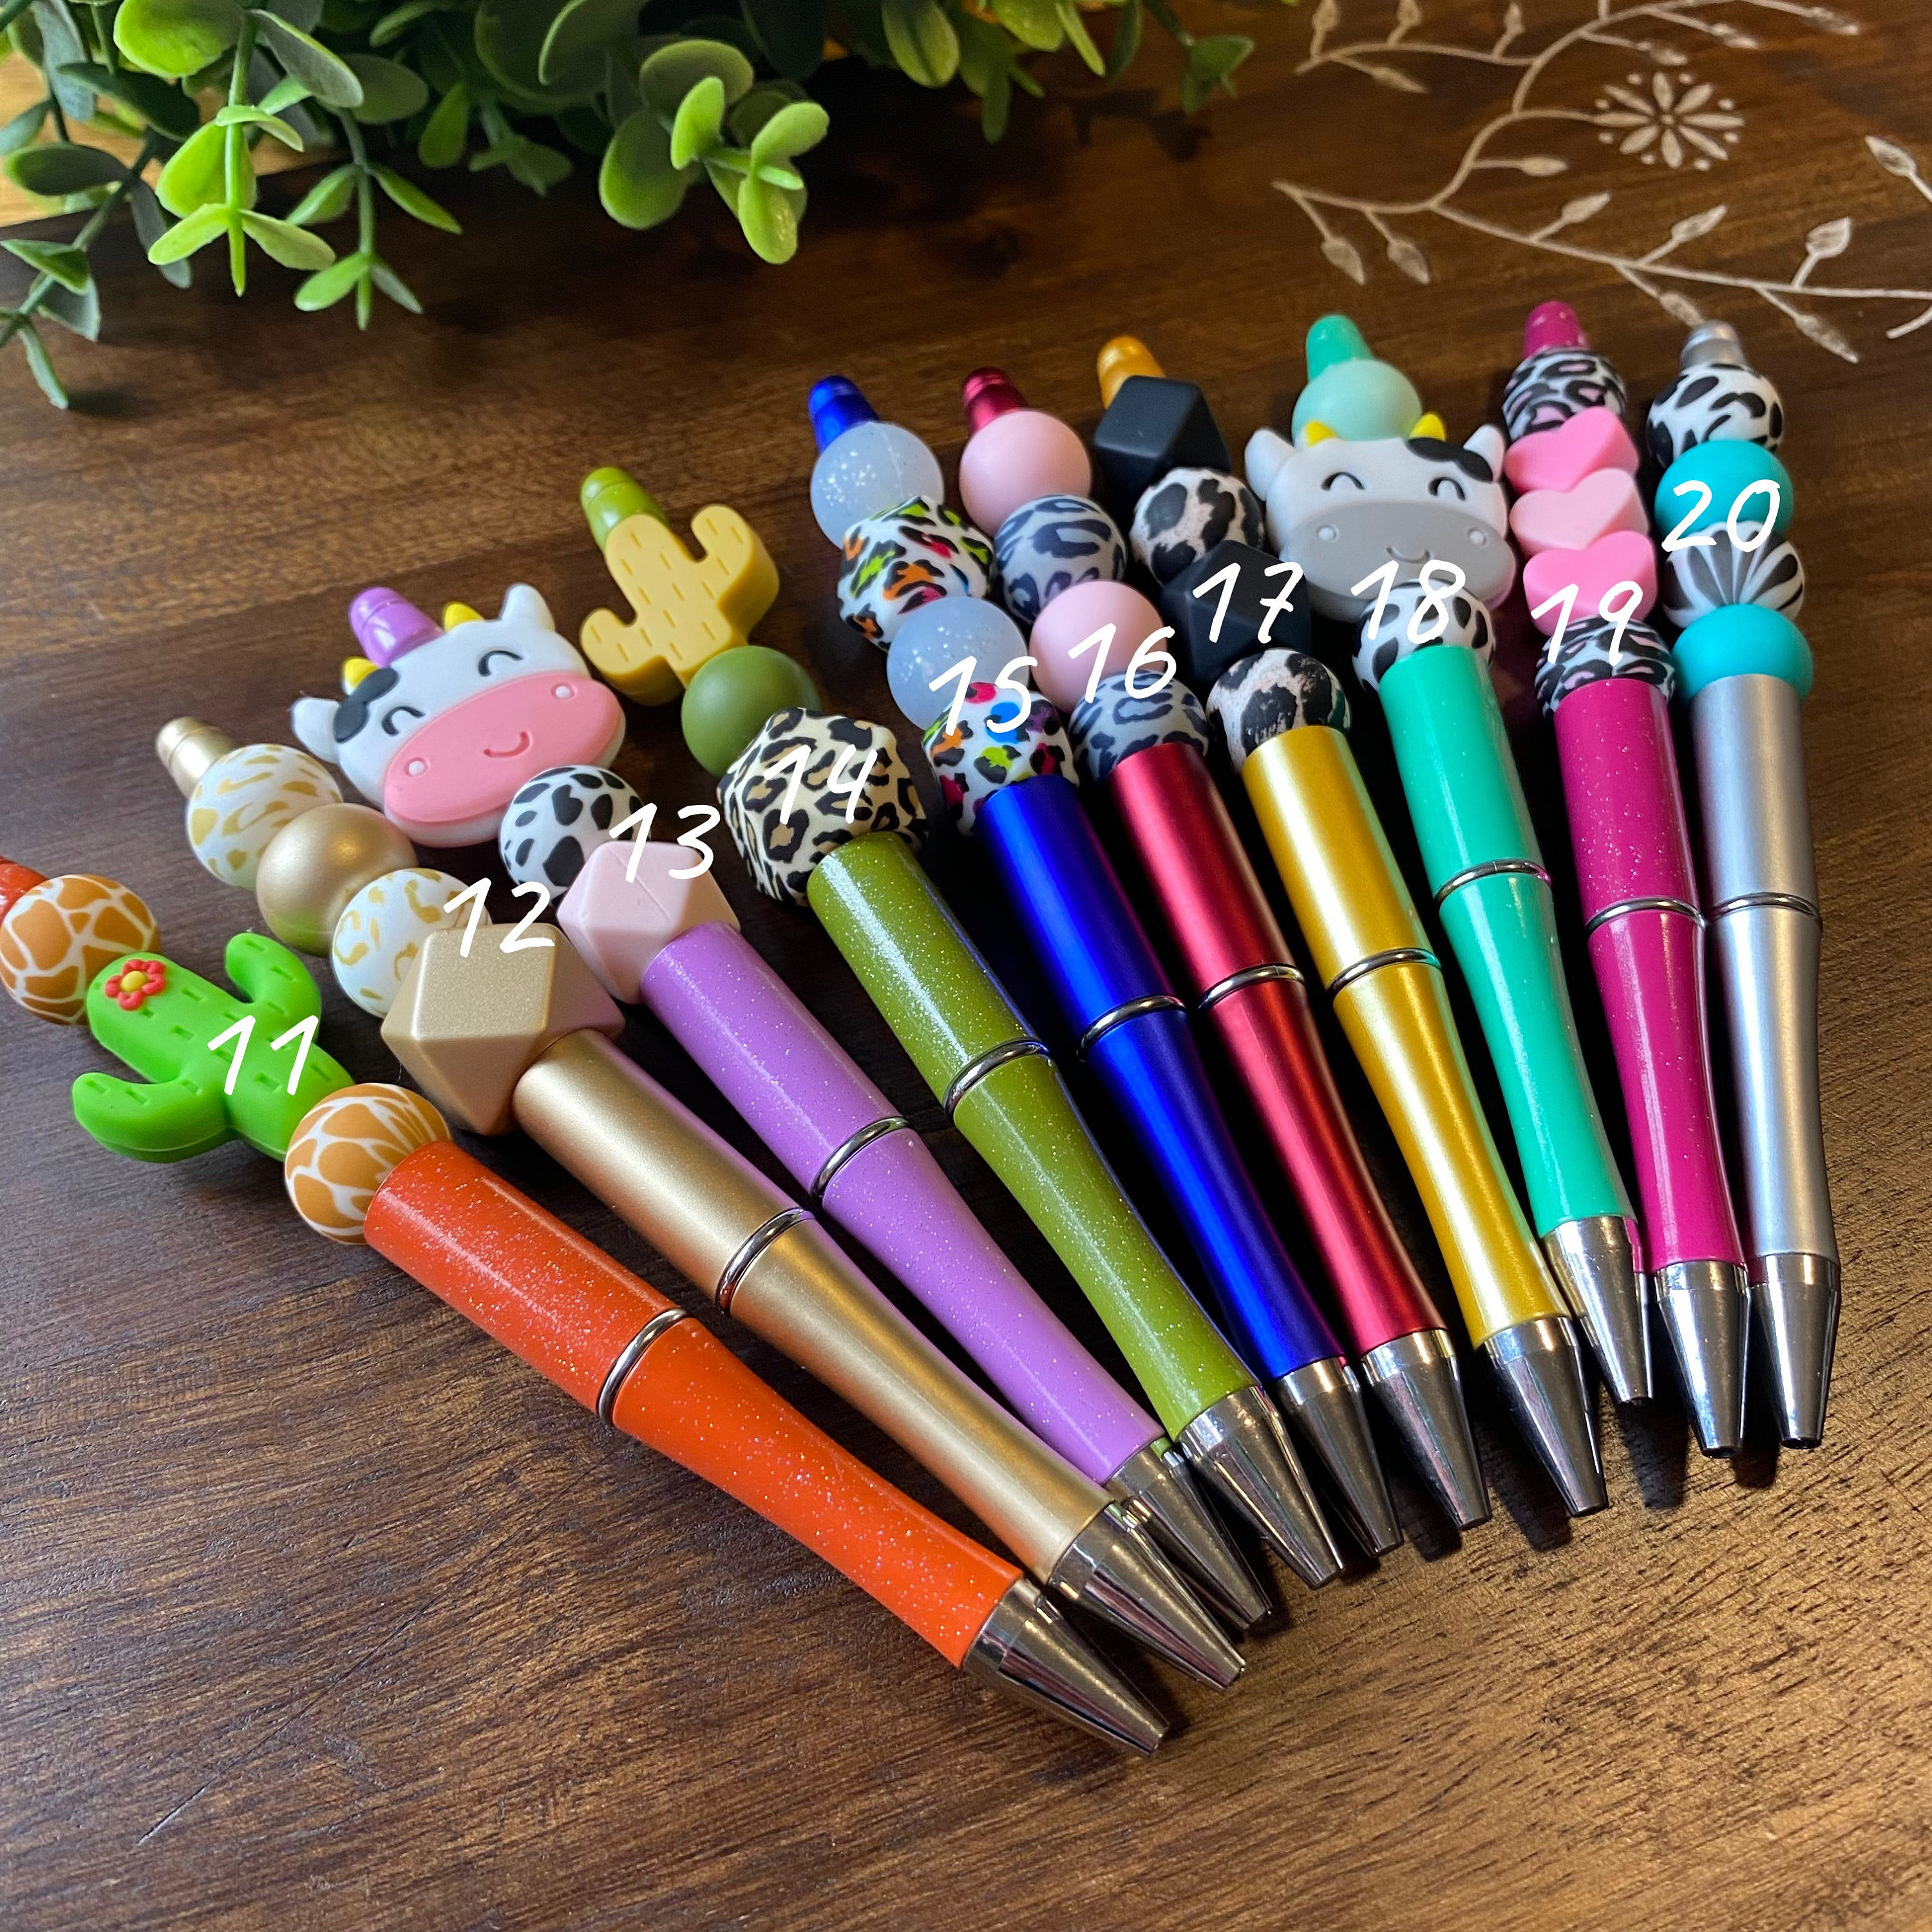 Nurse Pen | Bubble Bead Pen | Beaded Ink Pen | Personalized Pen | Beaded  Pen | Scrub Pen| Back to school pens